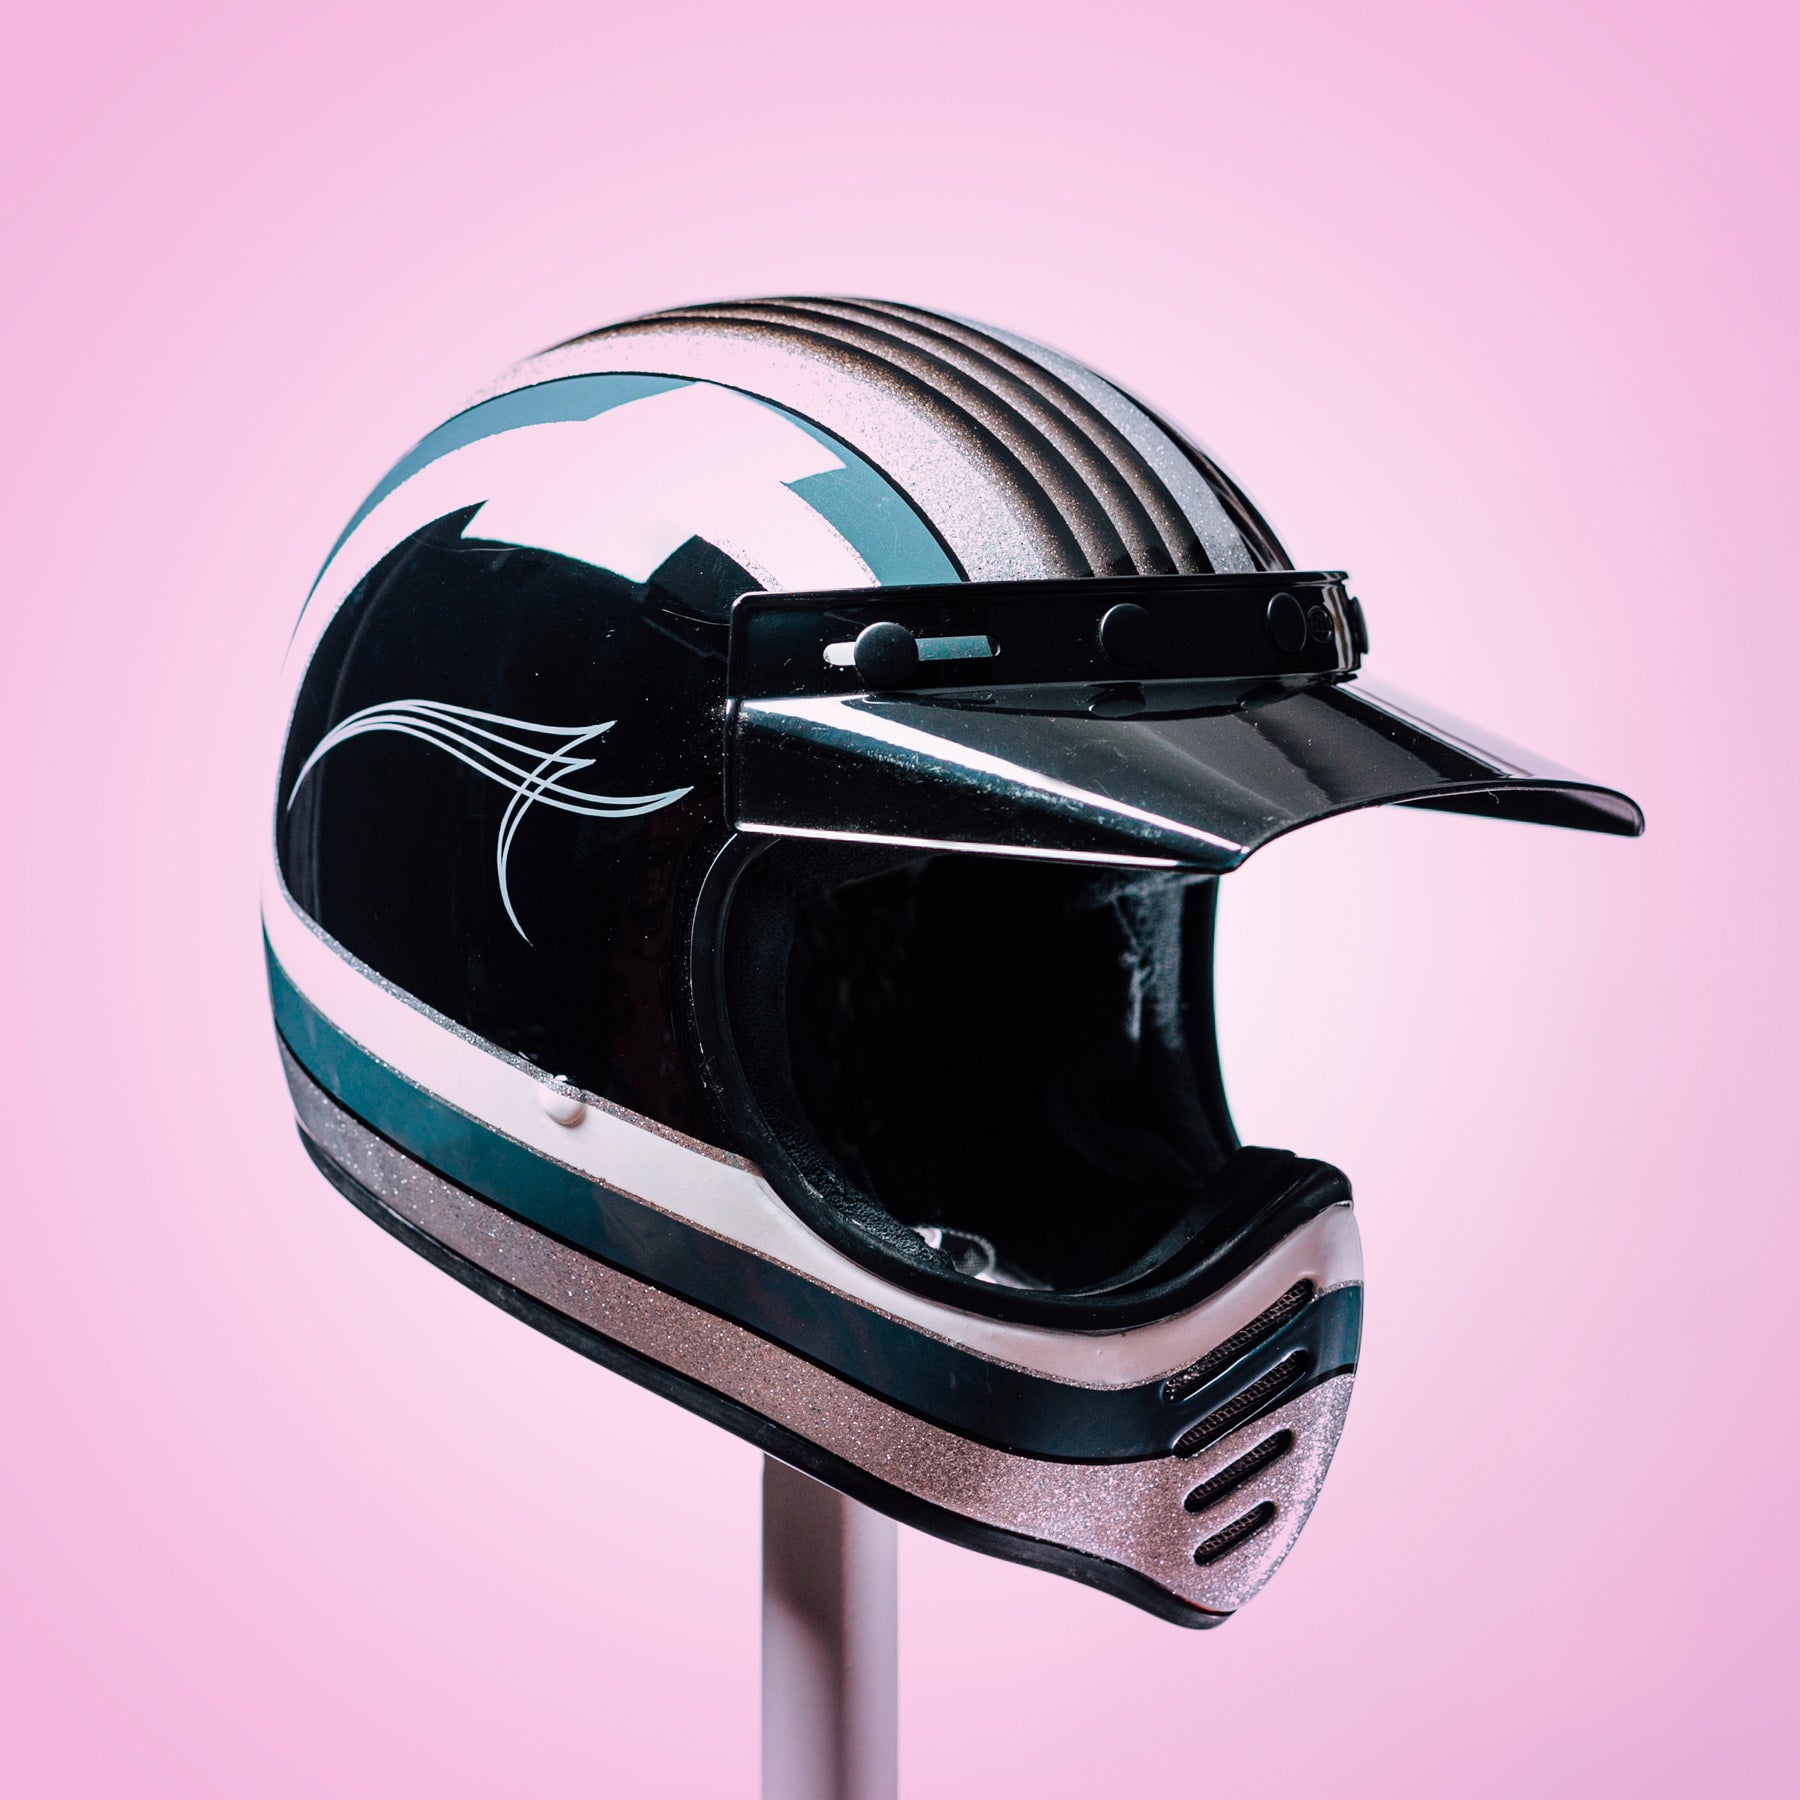 Trippy Ten Helmet Art Show Pittsburgh Gerad Poepke Valley Kustoms